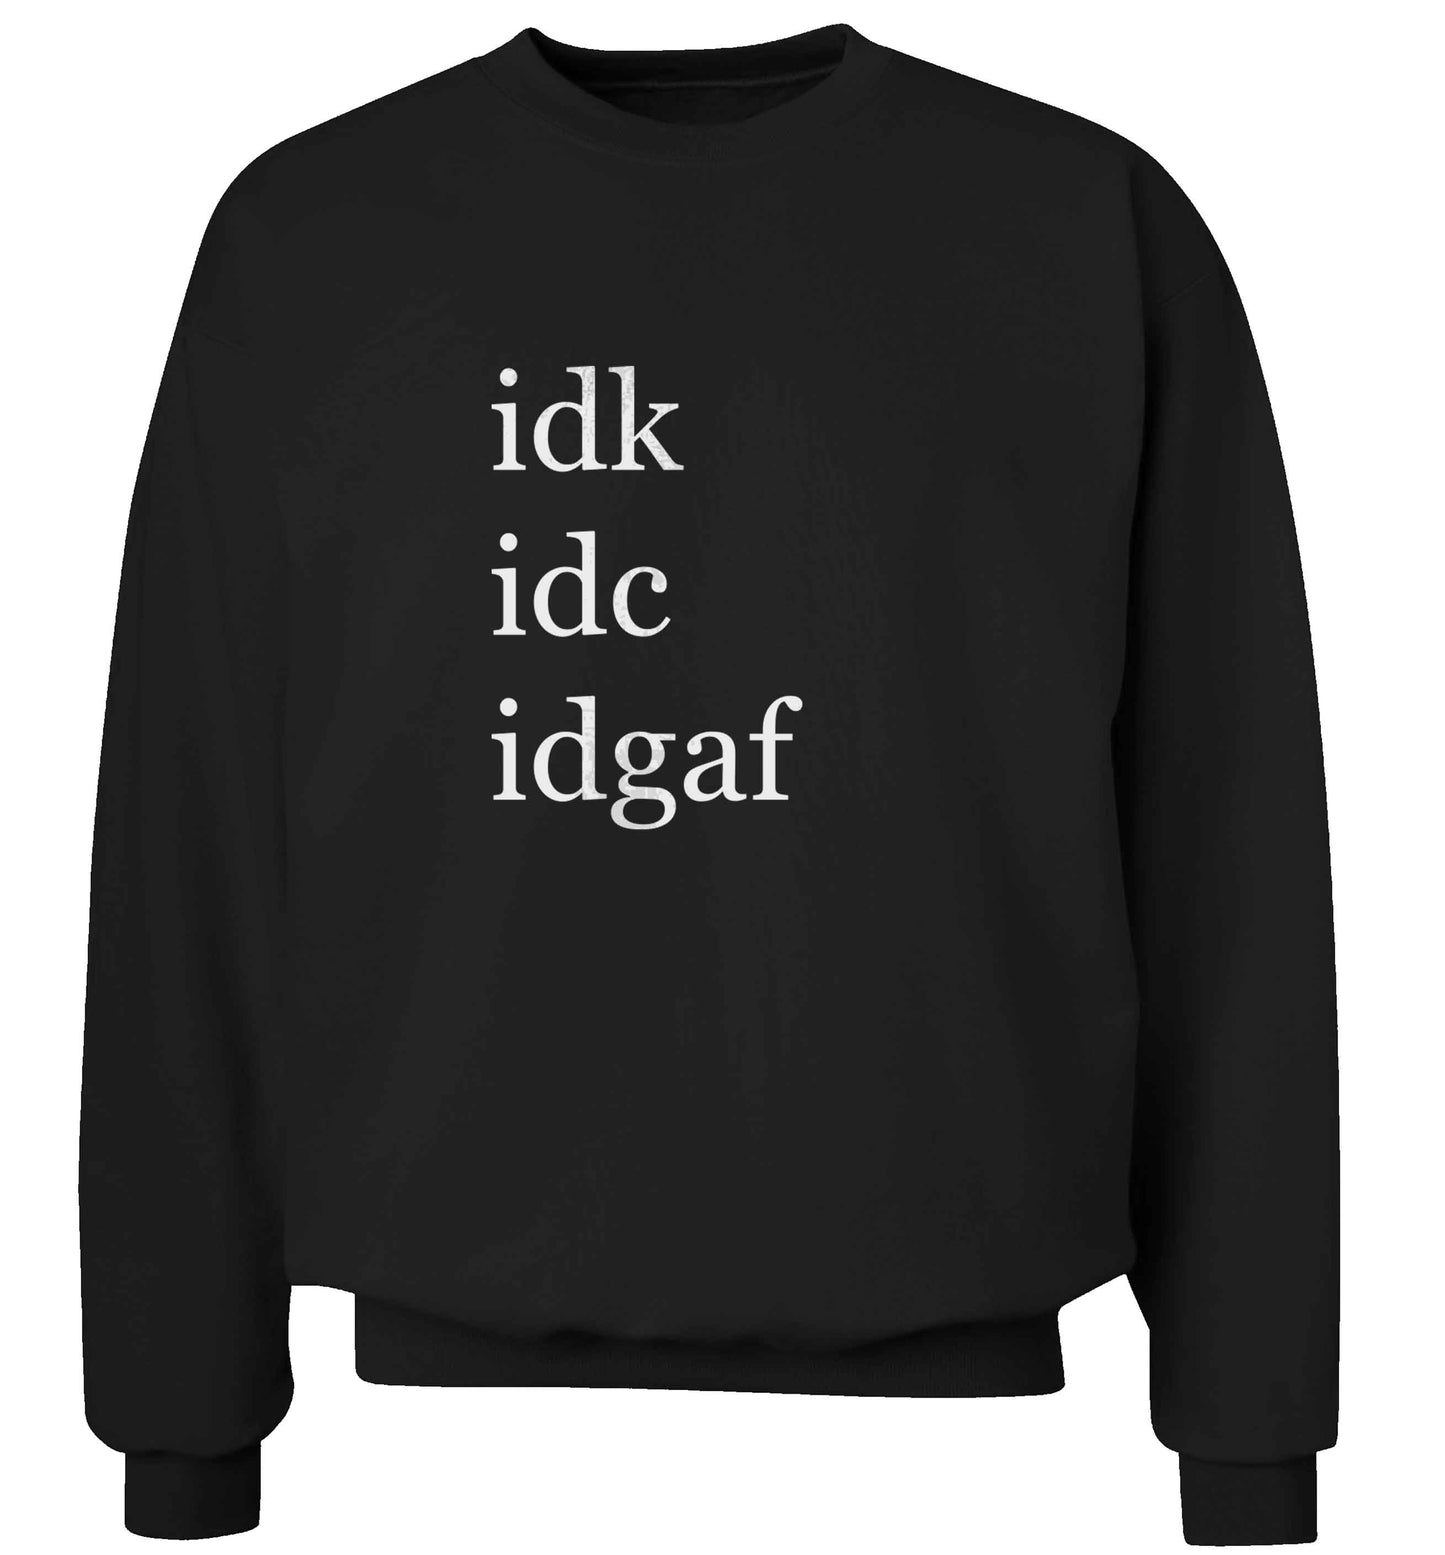 Idk Idc Idgaf adult's unisex black sweater 2XL